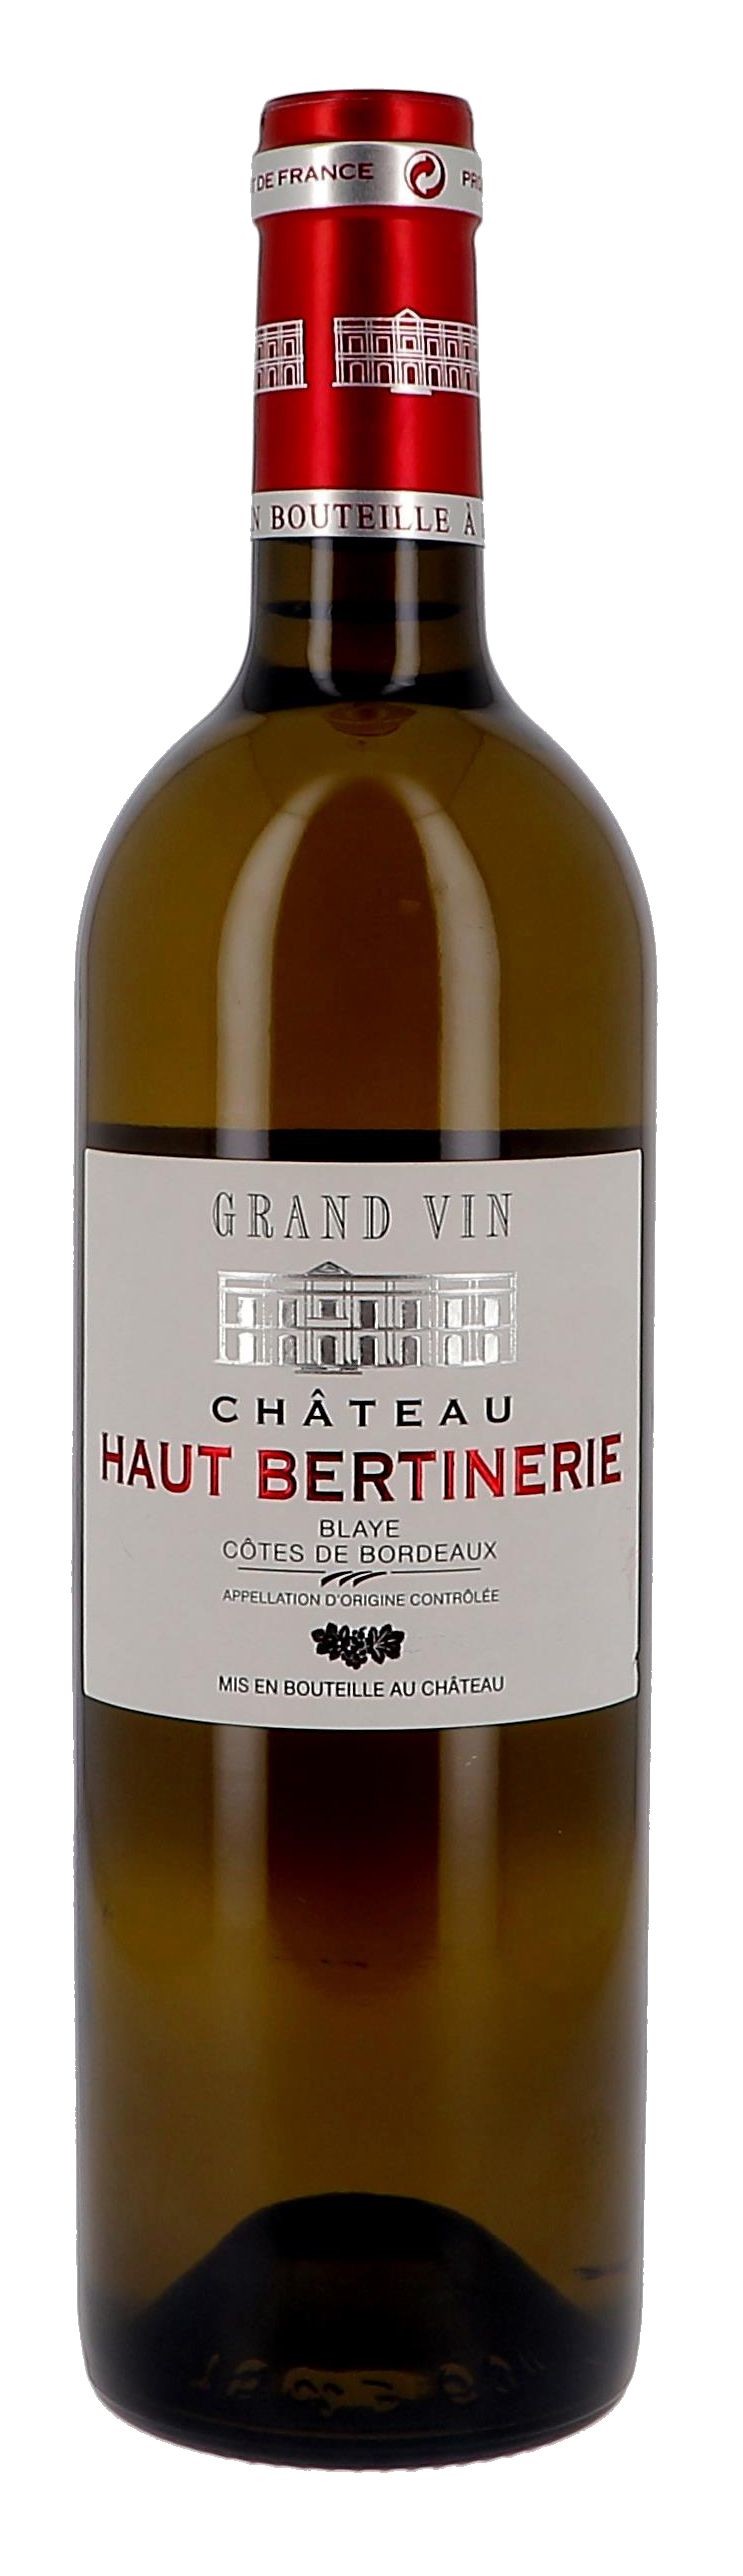 Chateau Haut-Bertinerie wit 75cl Blaye Cotes de Bordeaux